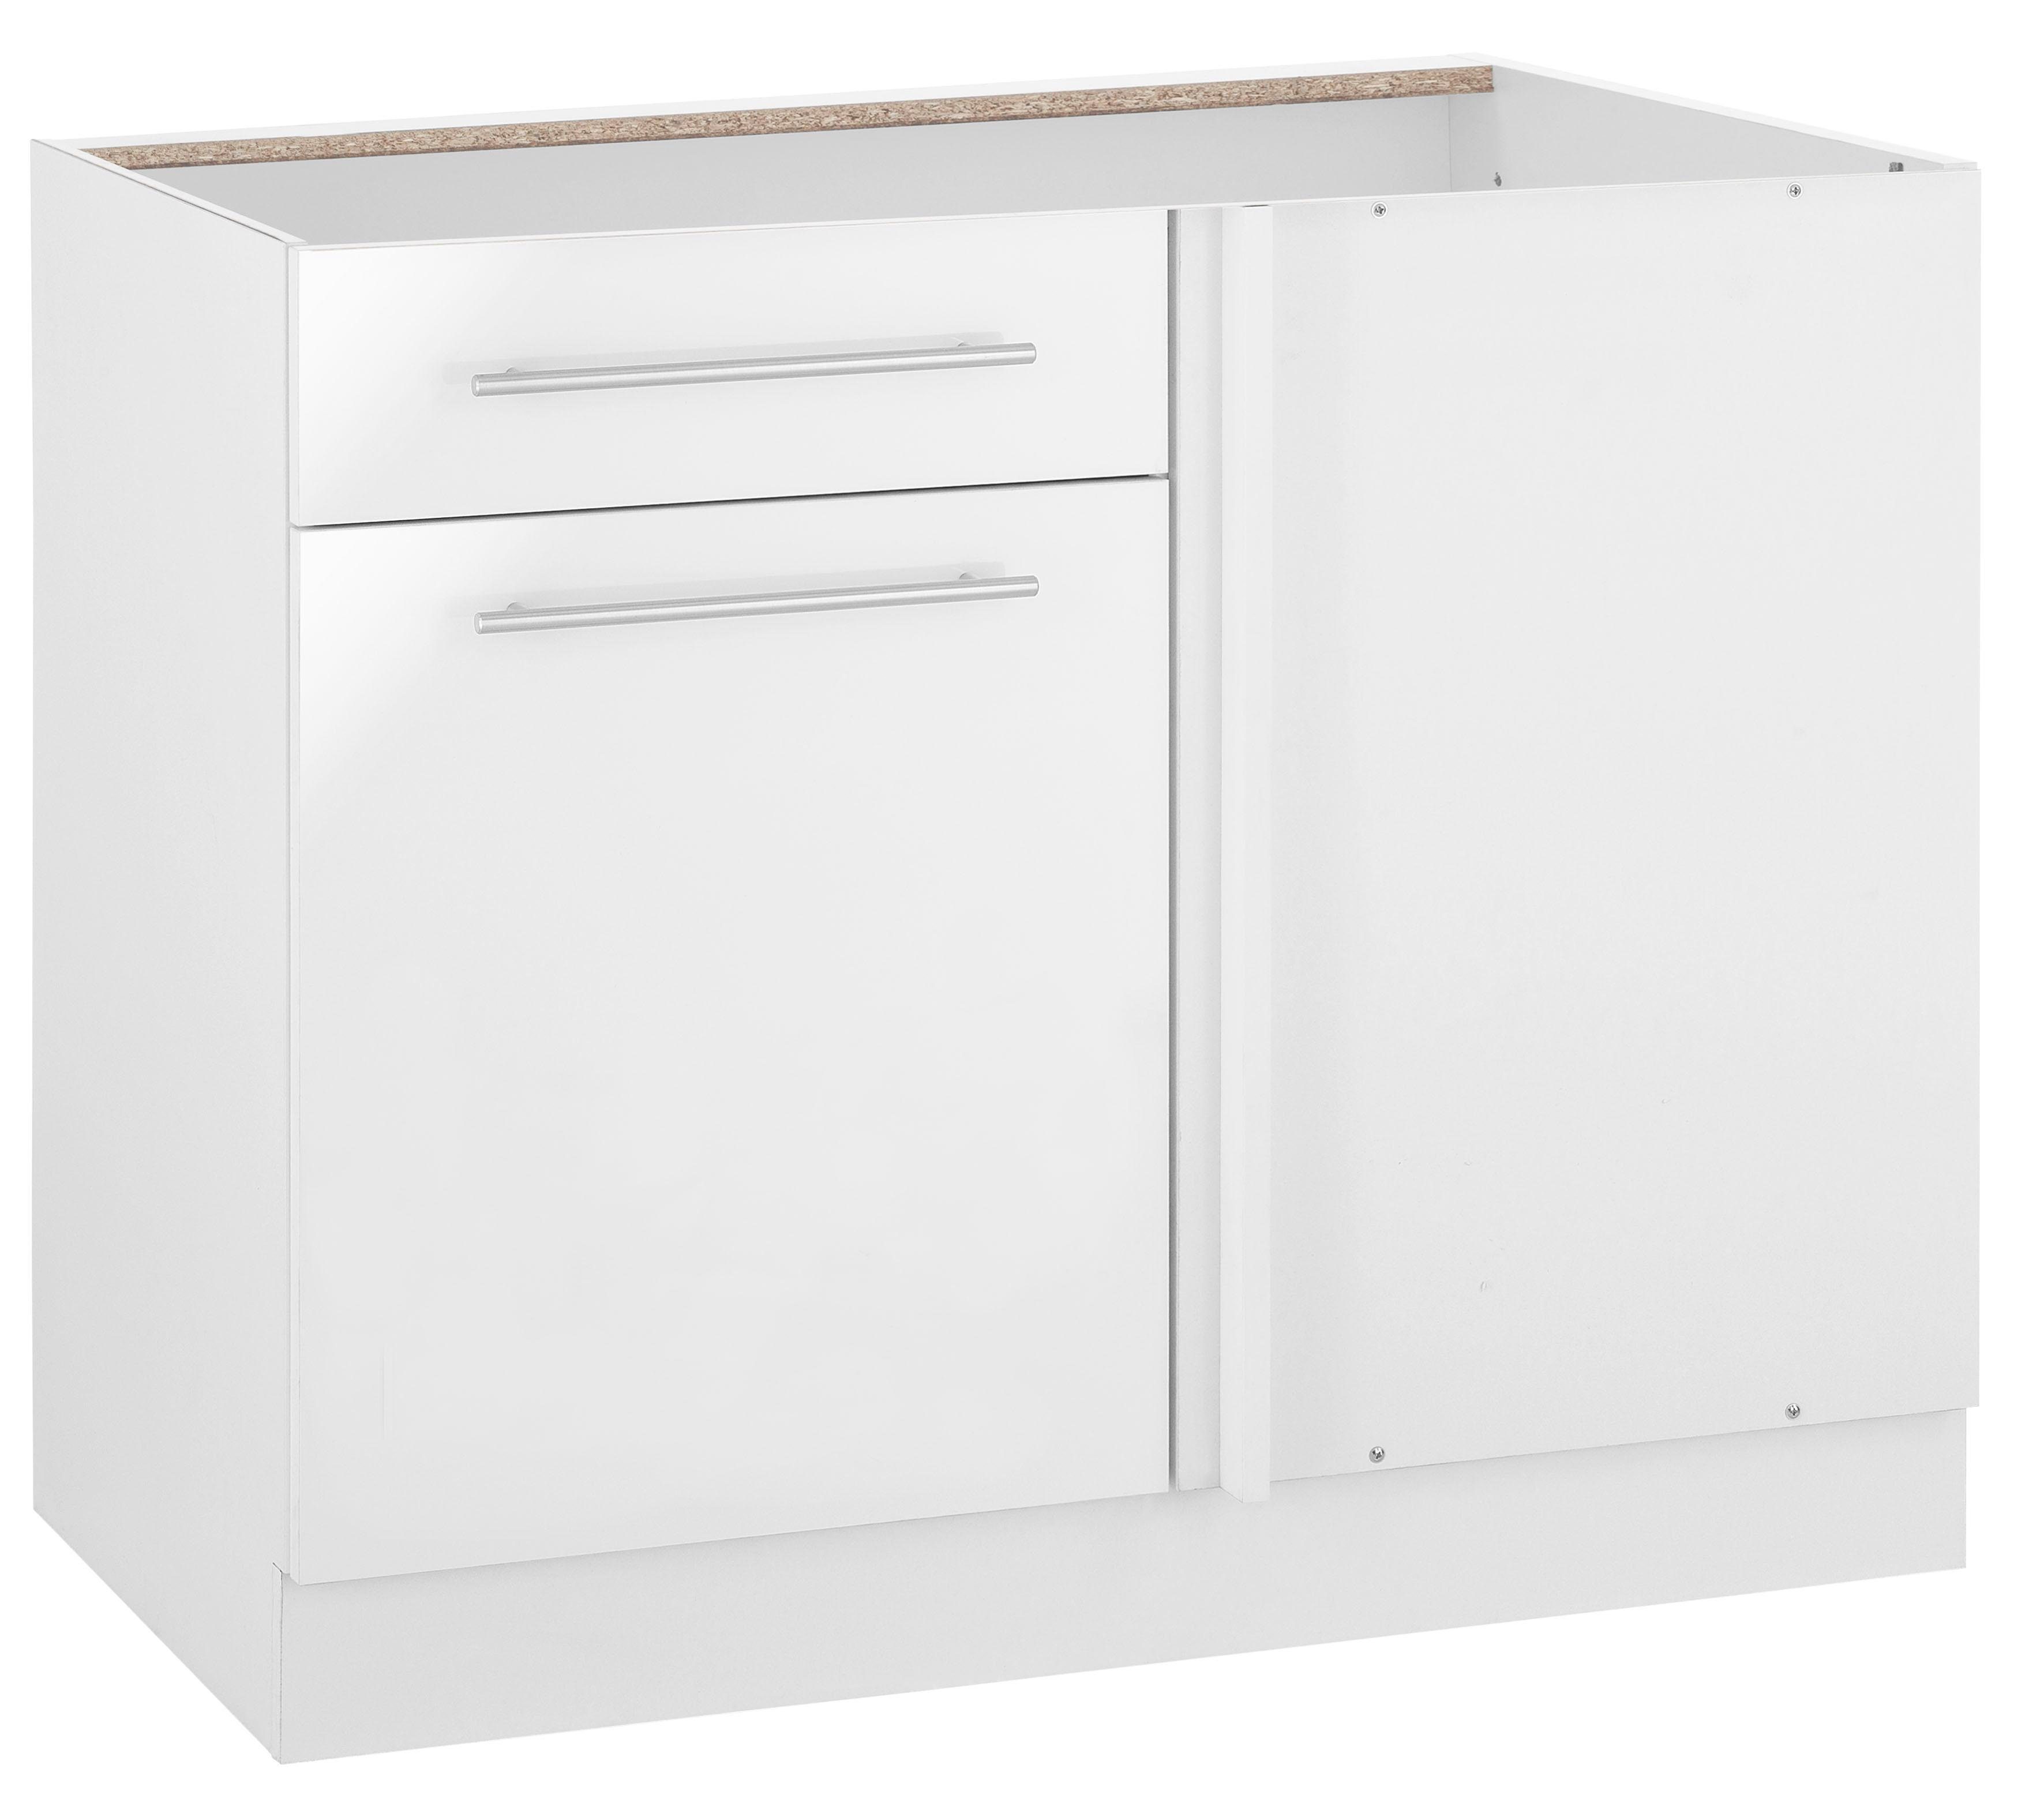 wiho Küchen Eckunterschrank Flexi2 Breite 100 cm, Planungsmaß 110 cm, ohne Arbeitsplatte weiß Glanz/weiß